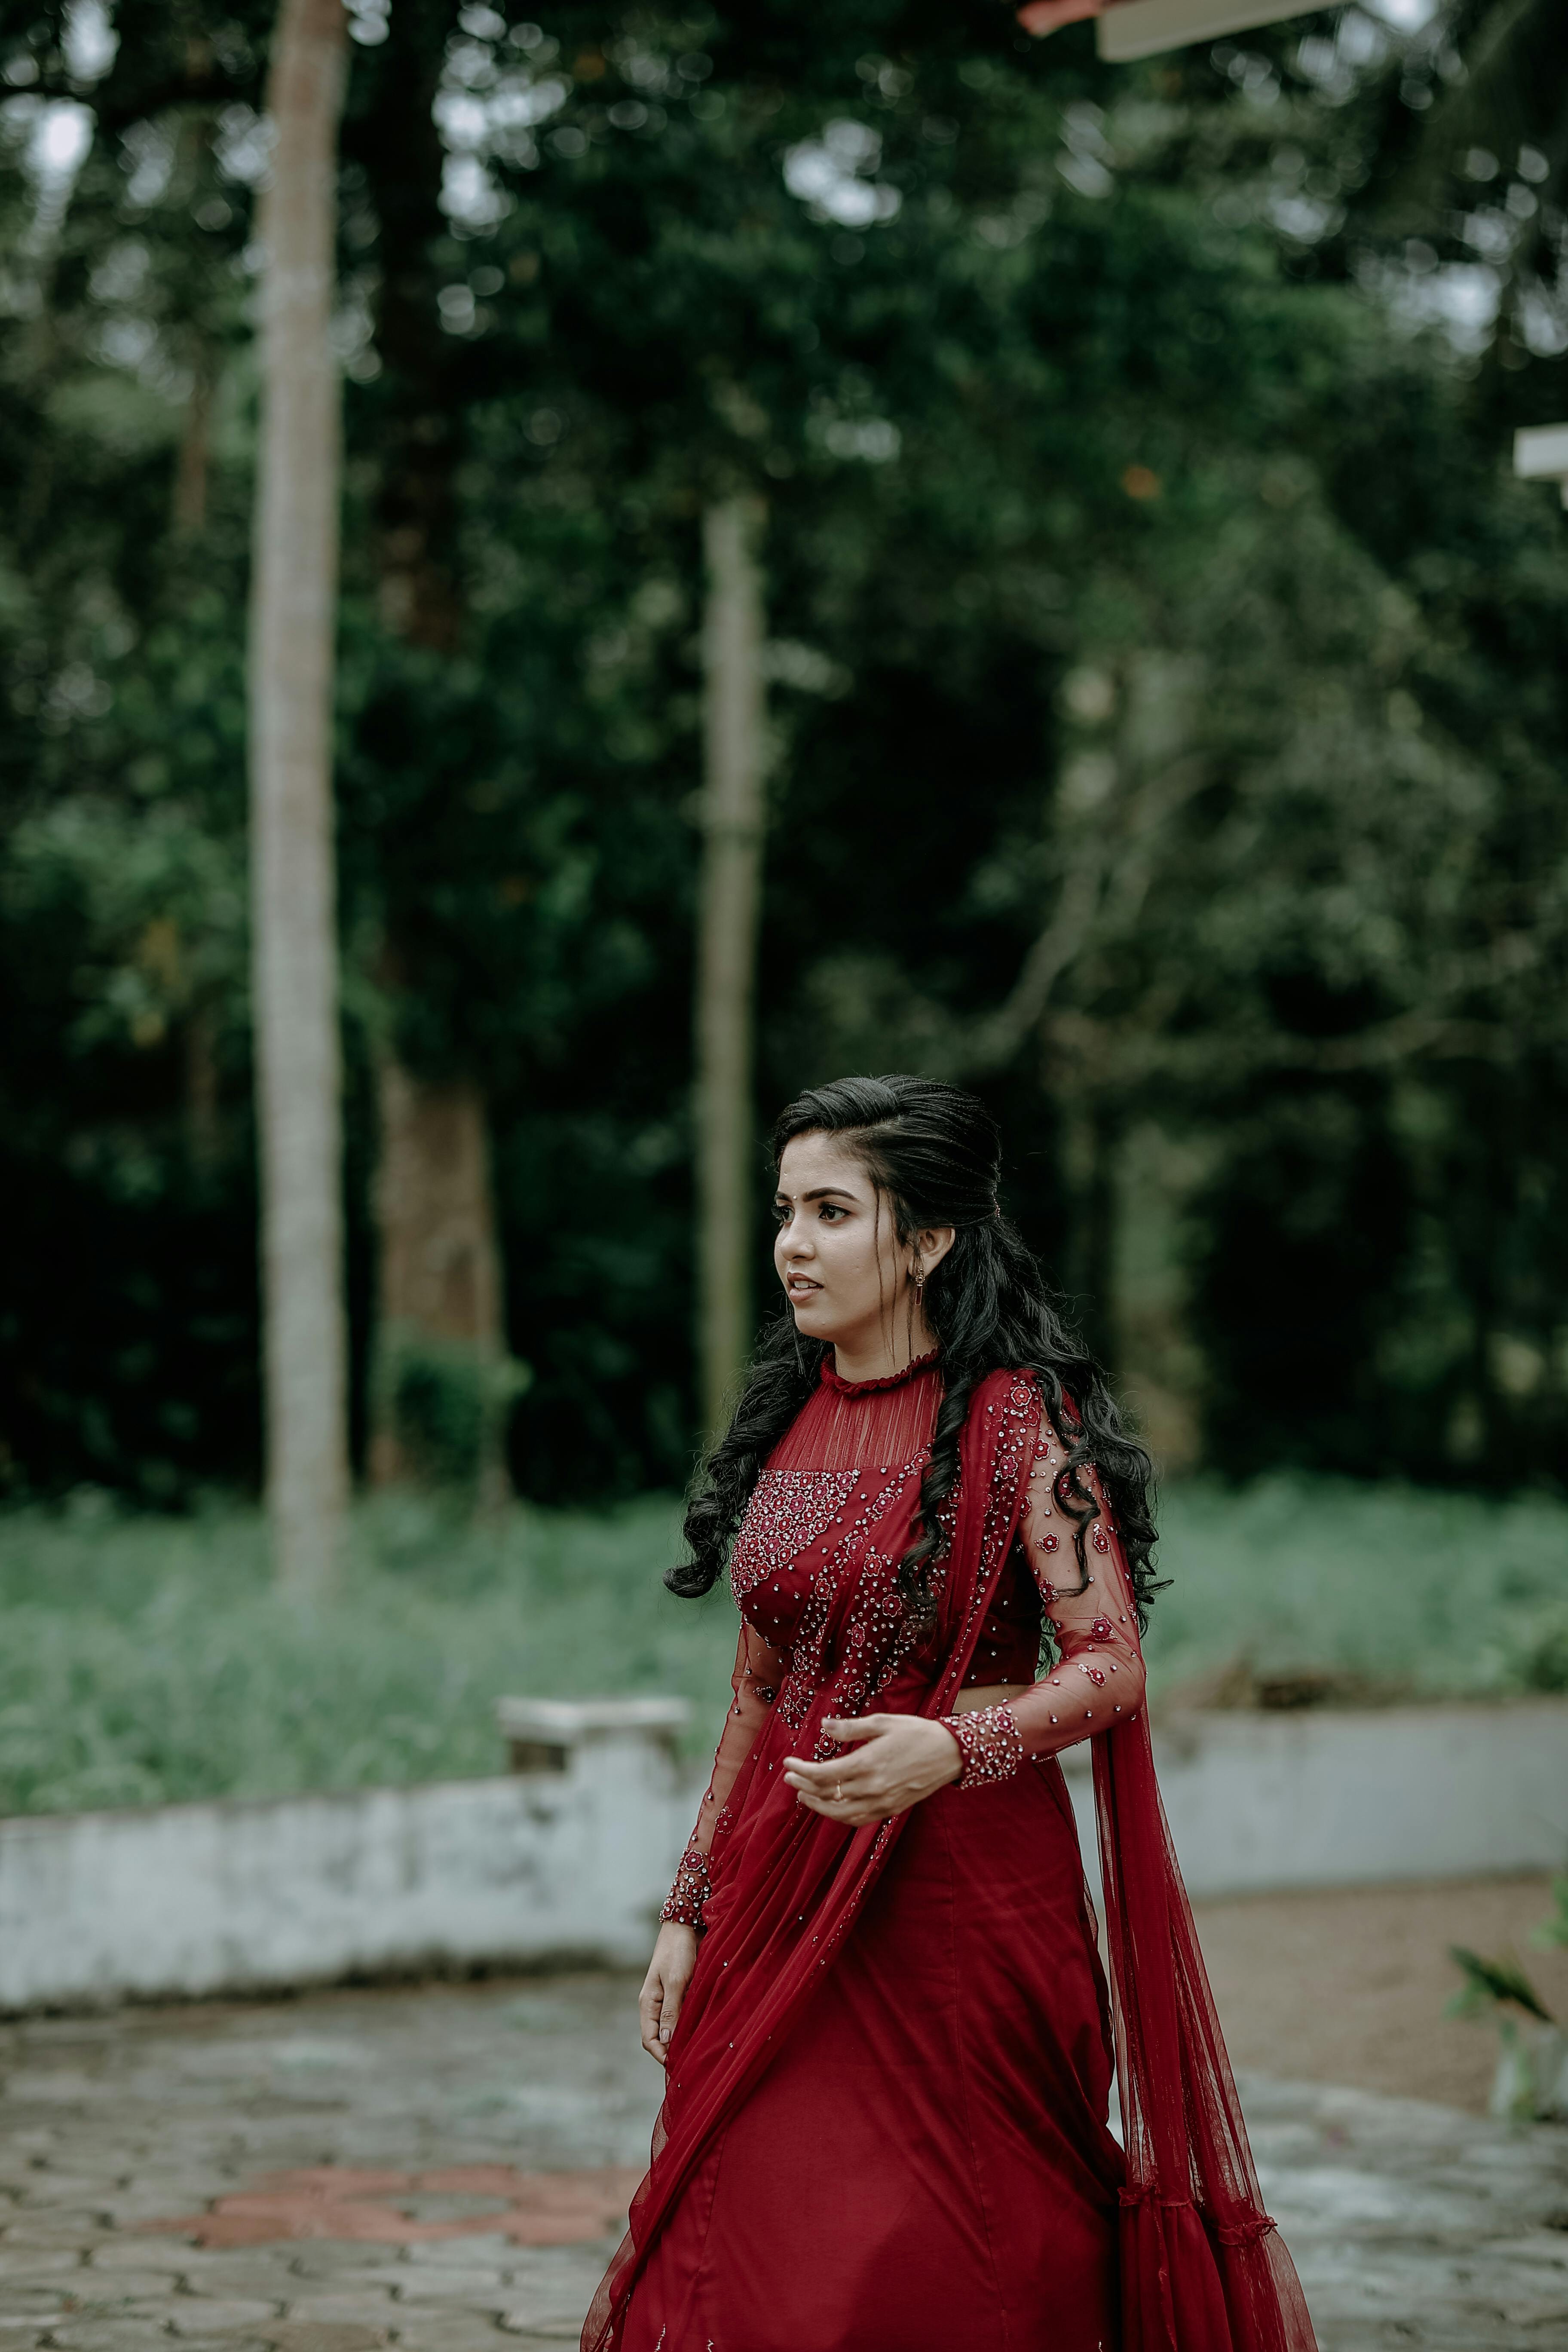 Buy Red Priyanka Chopra Saree Gown Party Wear Online at Best Price | Cbazaar